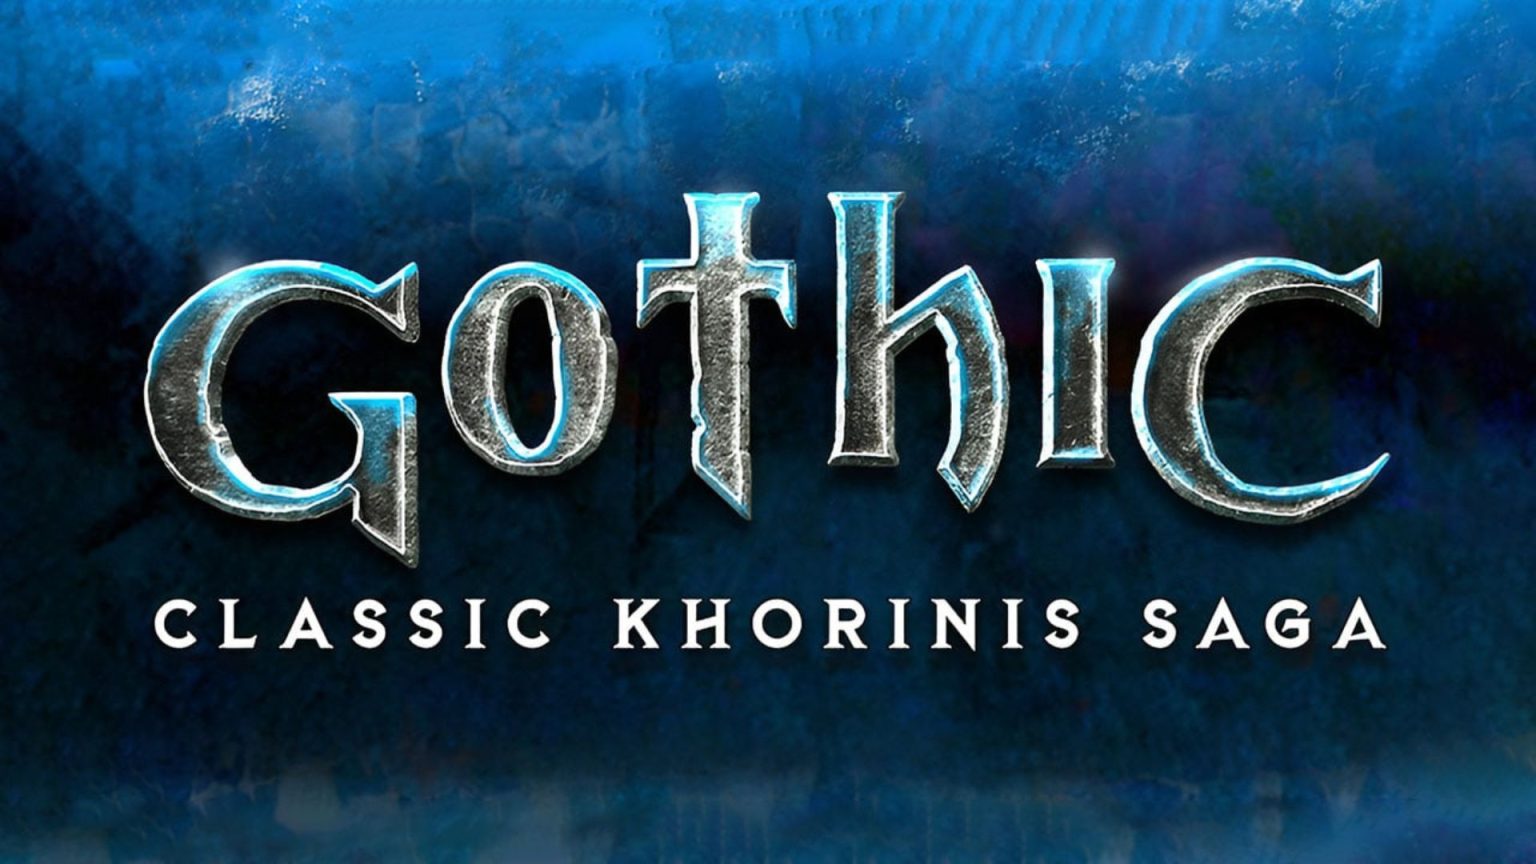 Gothic Classic Khorinis Saga Collection verschijnt in juni op Nintendo Switch